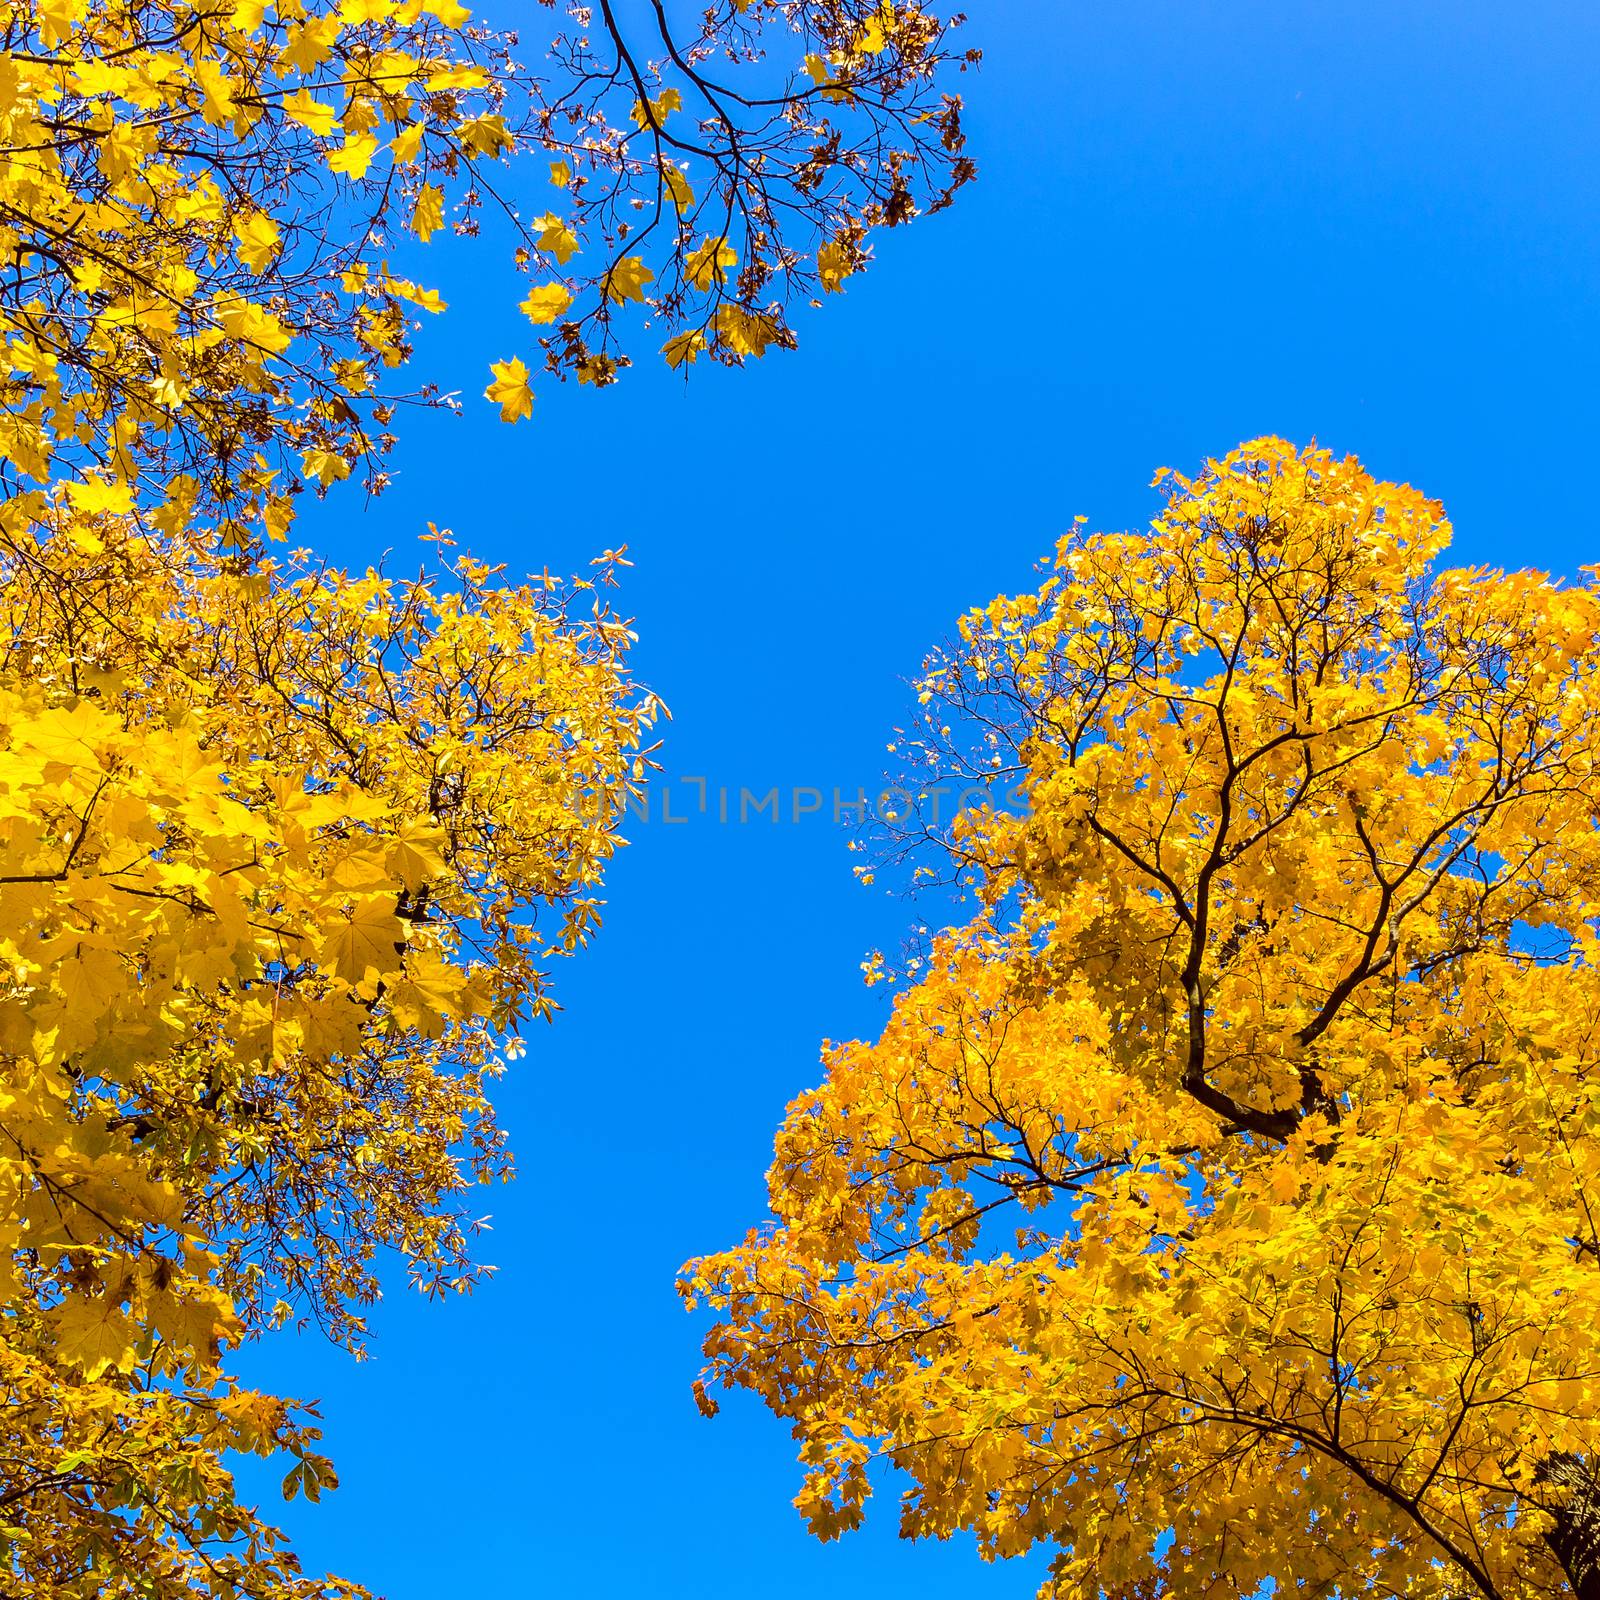 Autumn trees by pawel_szczepanski